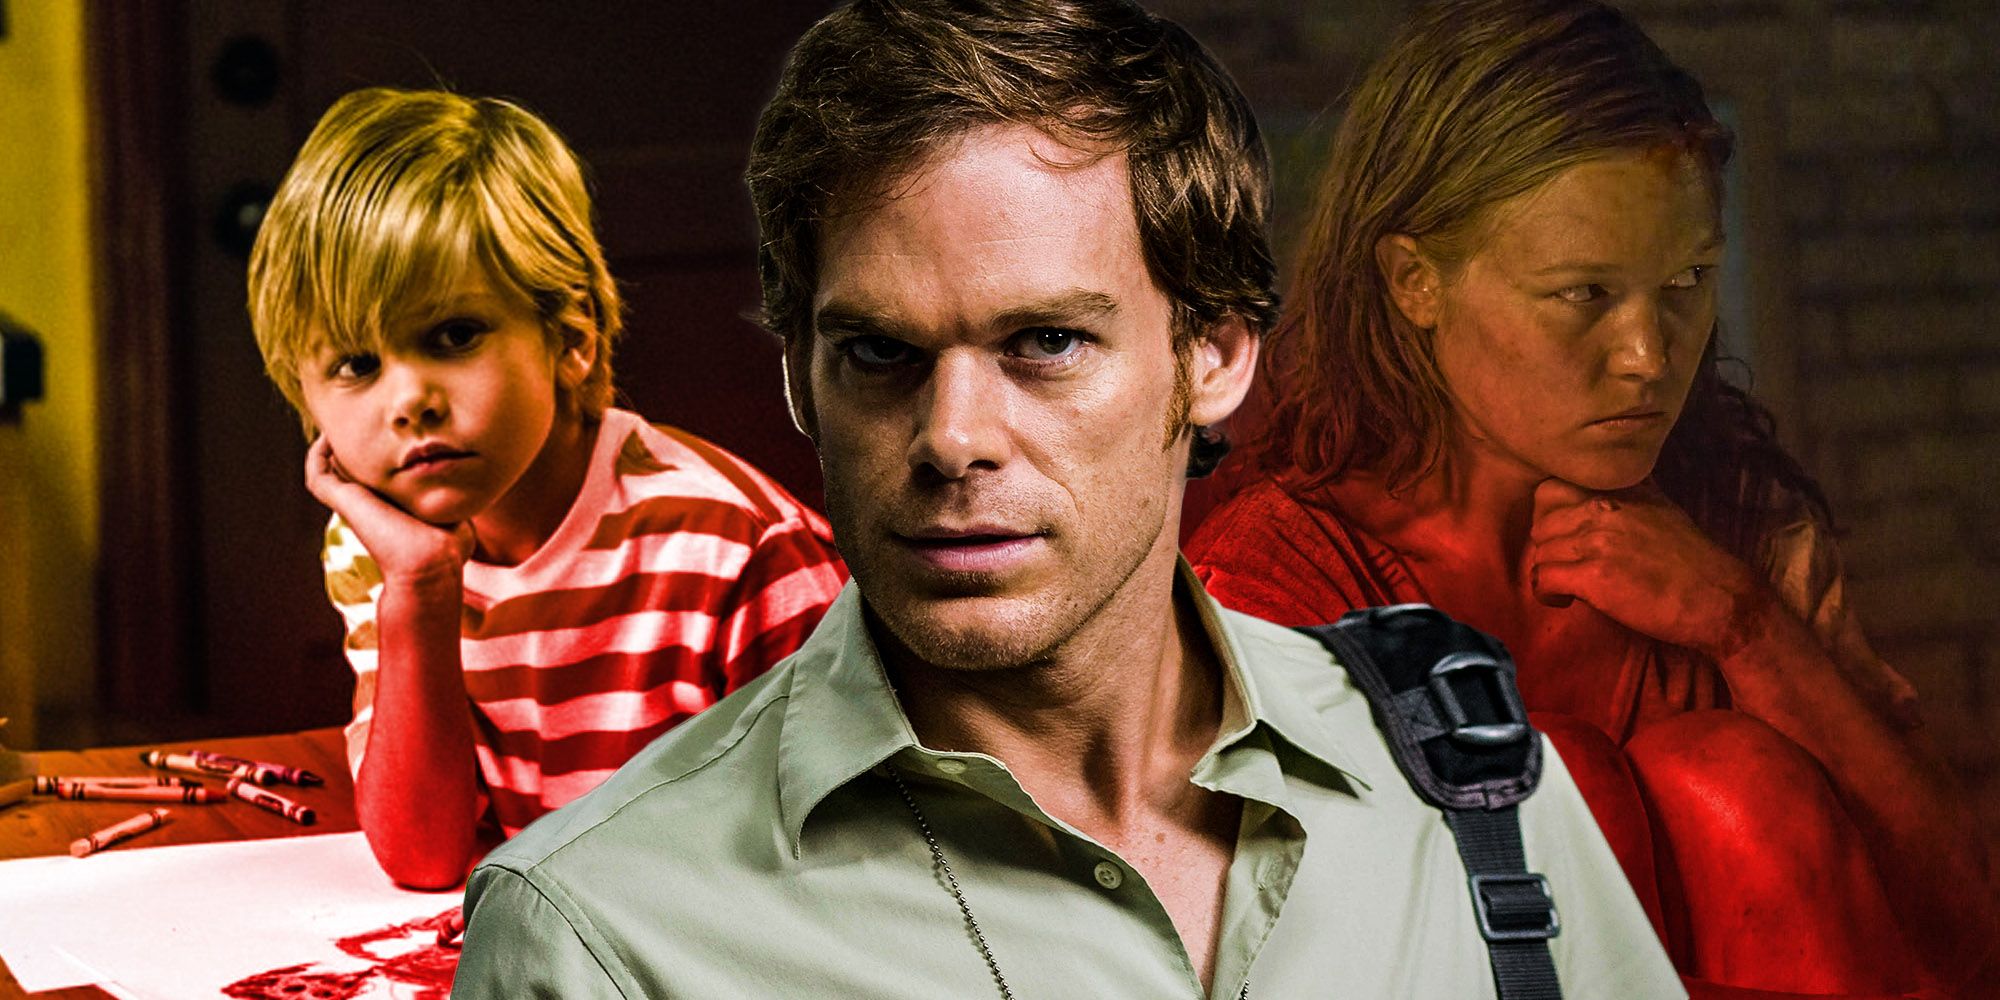 Je Dexterův syn vrahem?